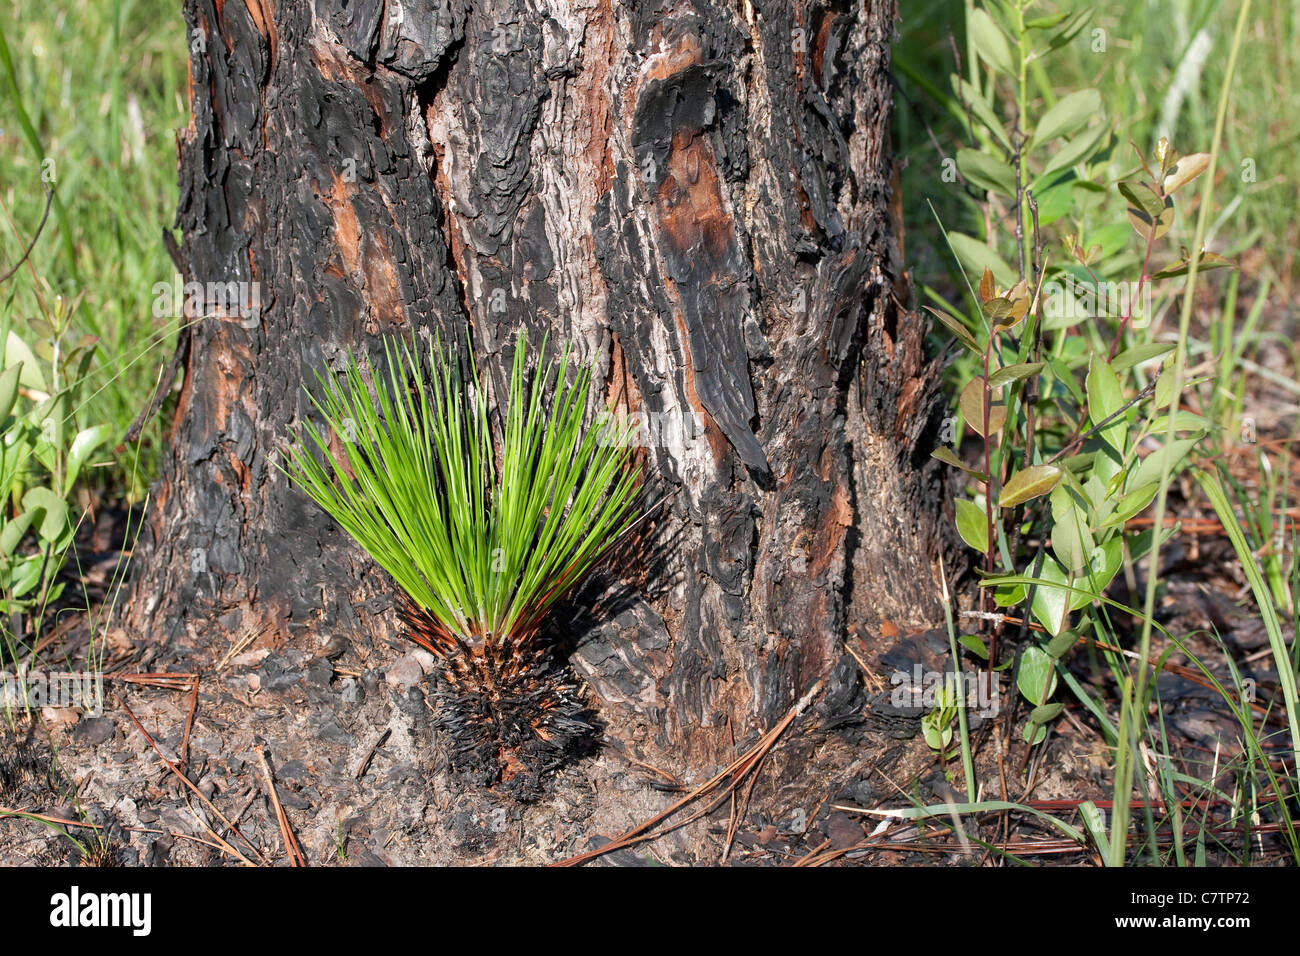 Longleaf pine Pinus palustris en germination de cône à la base de l'arbre de pin des marais matures Florida USA Banque D'Images